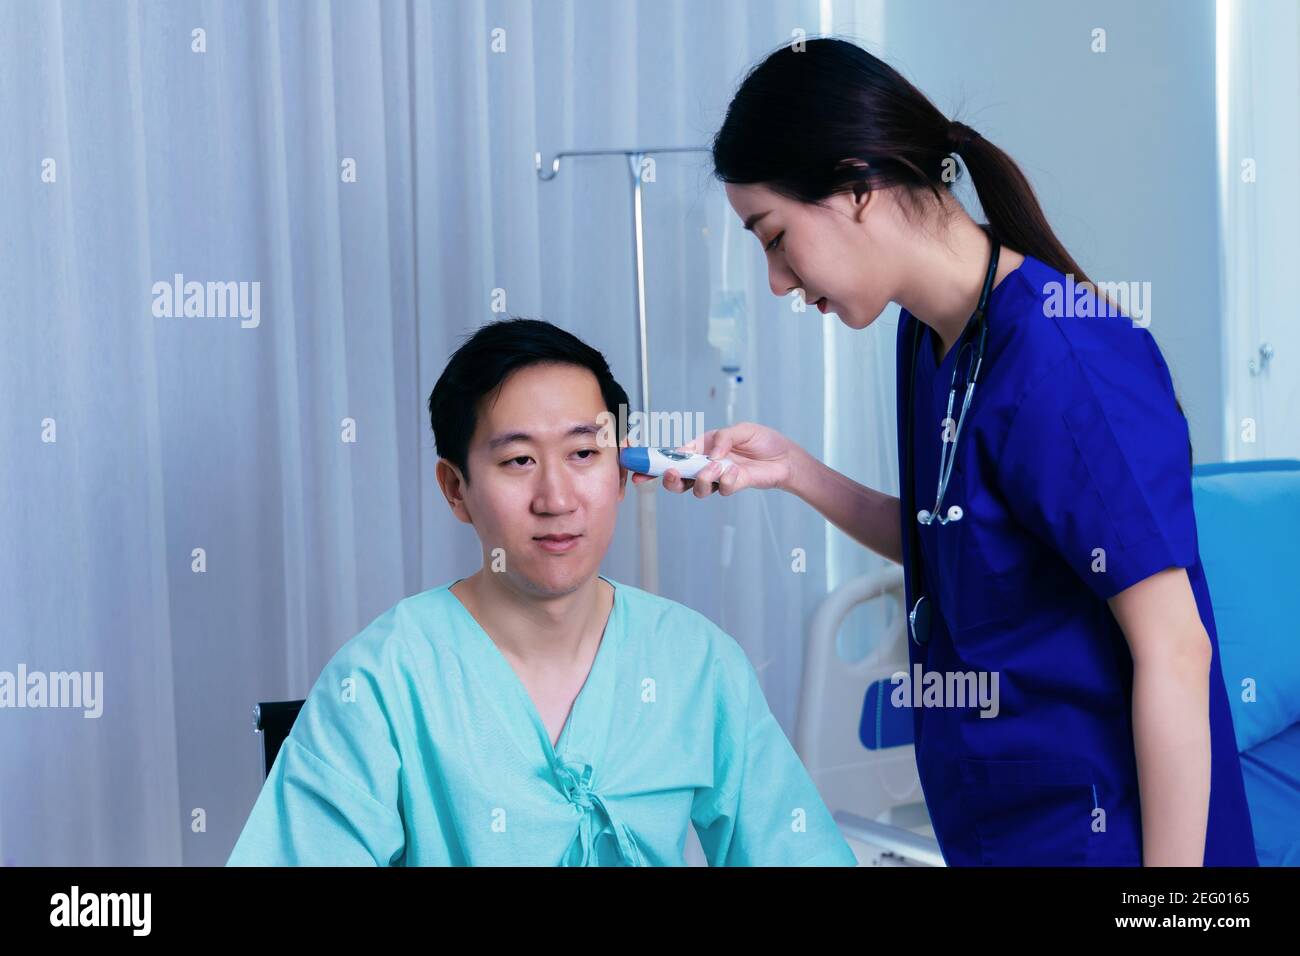 Junge Ärztein mit Stethoskop Untersuchung Ohren der asiatischen Männliche Patienten in Uniform mit Tympanikthermometer für Temperatur in Krankenhaus Stockfoto